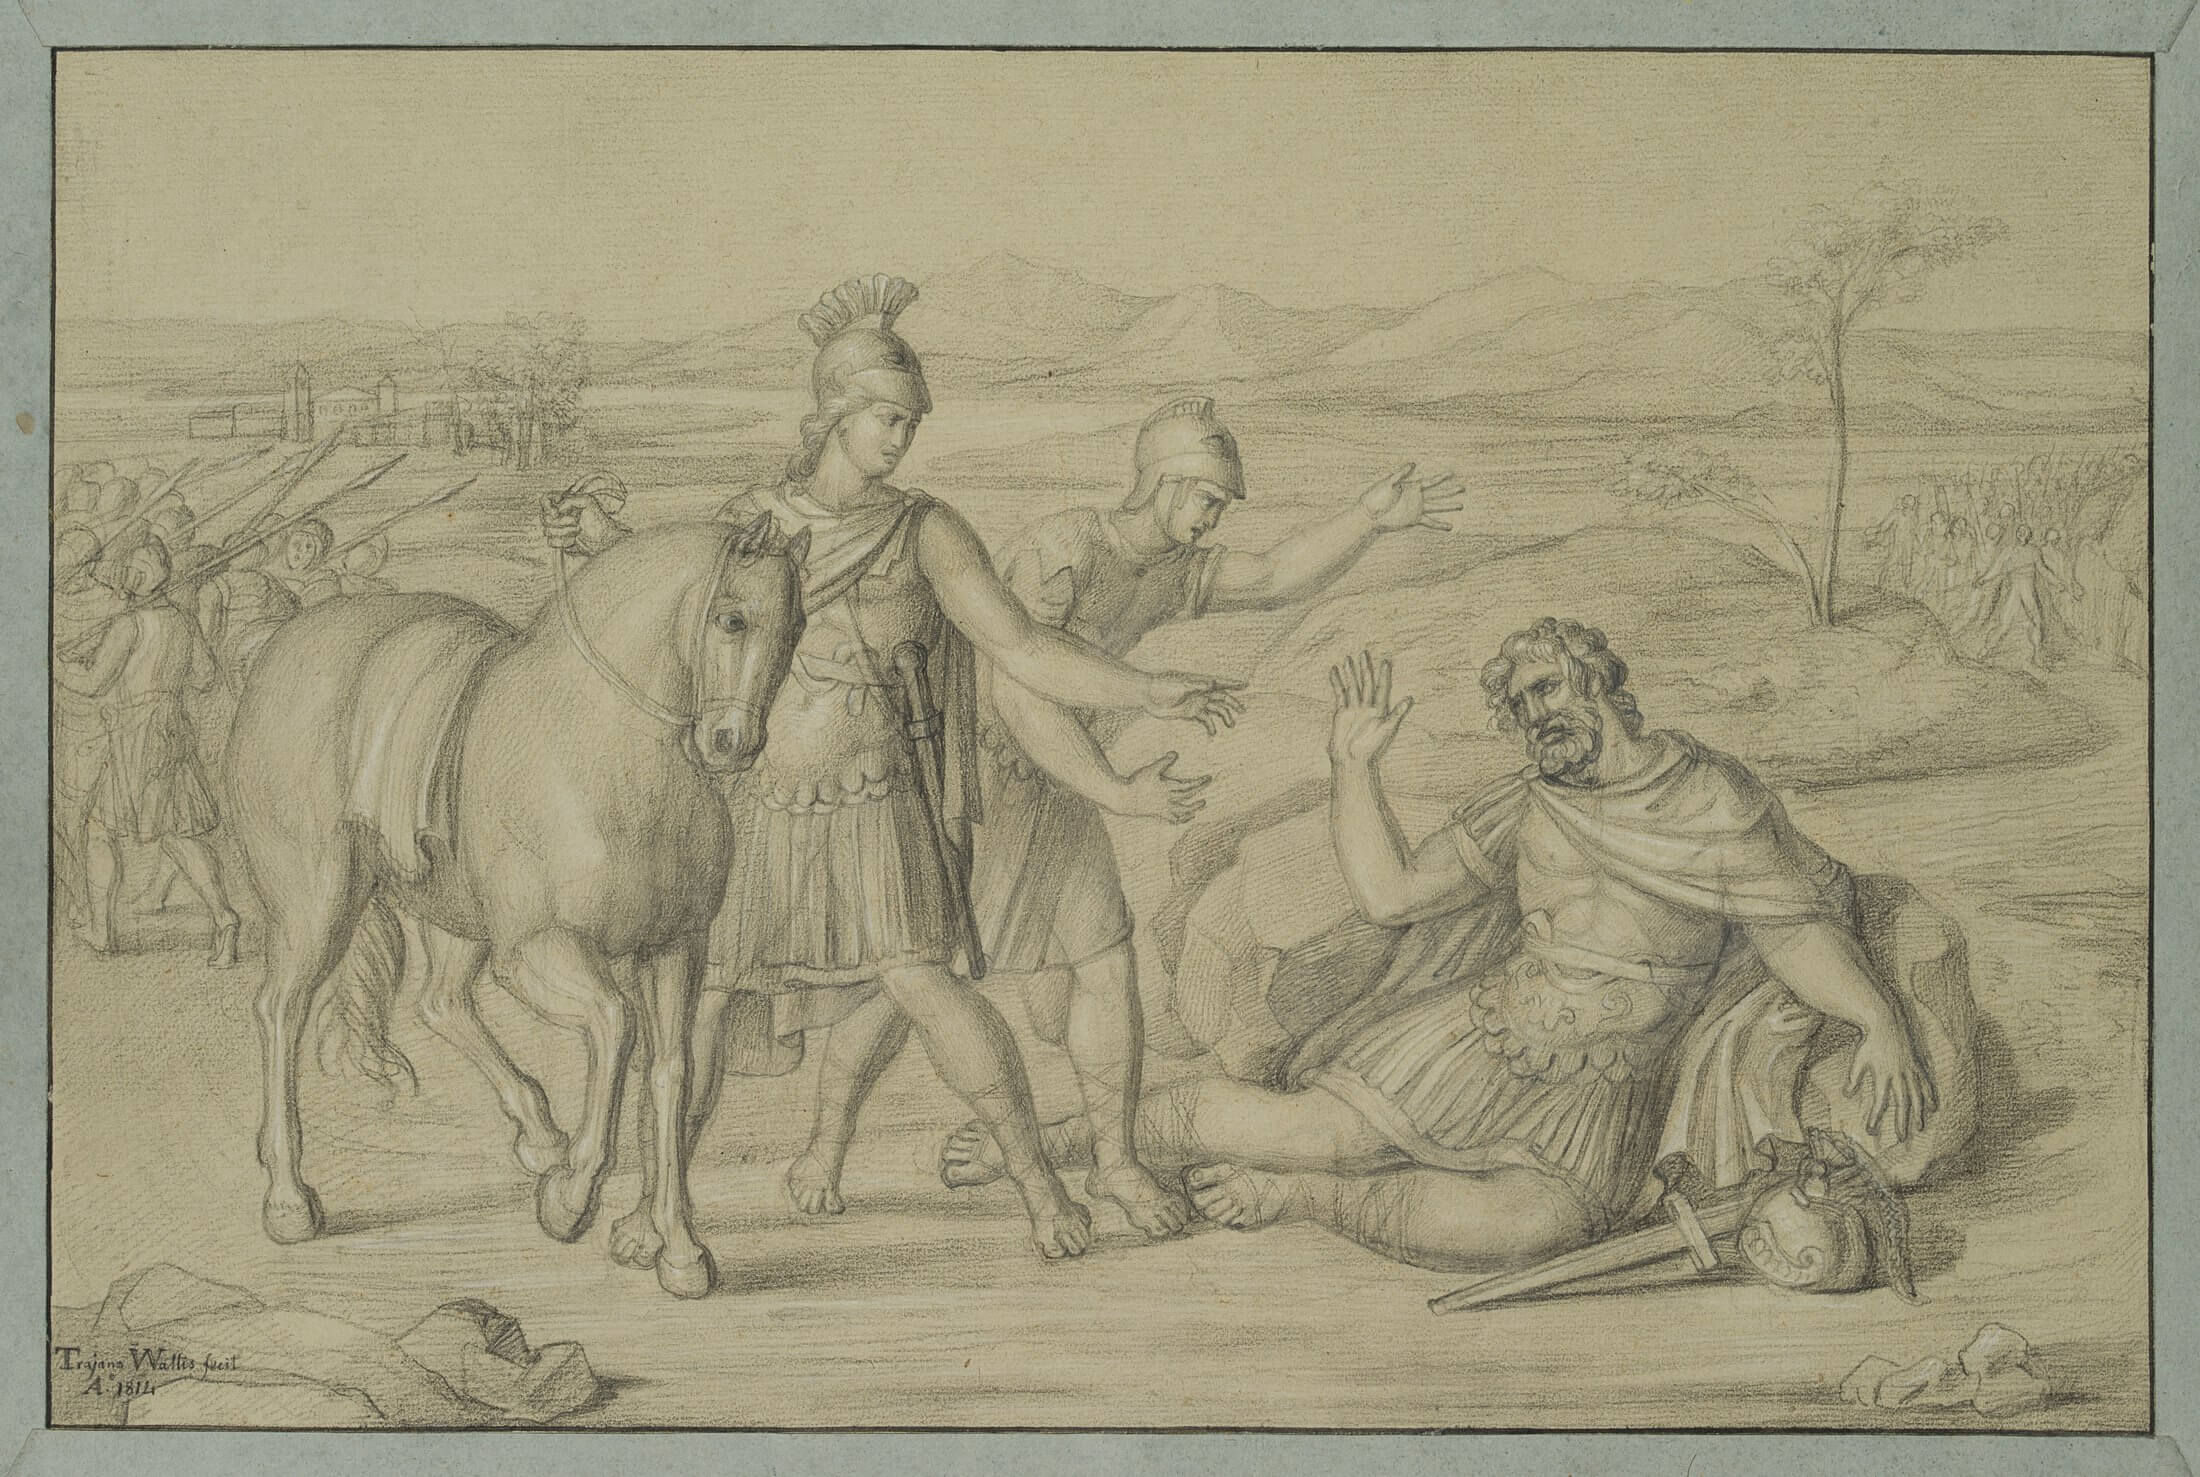 Der römische Konsul Cornelius Scipio lehnt die Rettung durch seinen Sohn ab